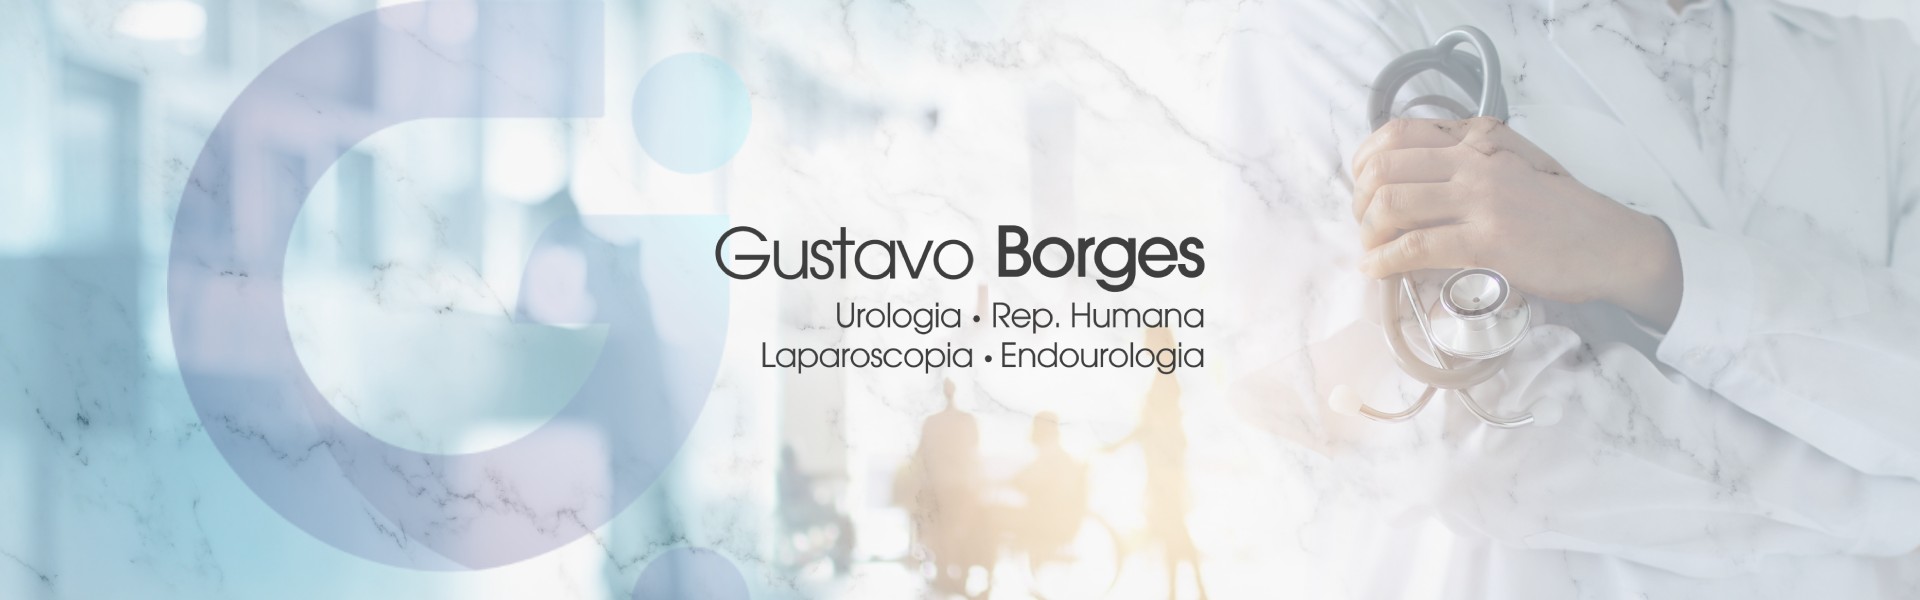 Dr. Gustavo Borges - Urologia | Rep. Humana | Laparoscopia | Endourologia